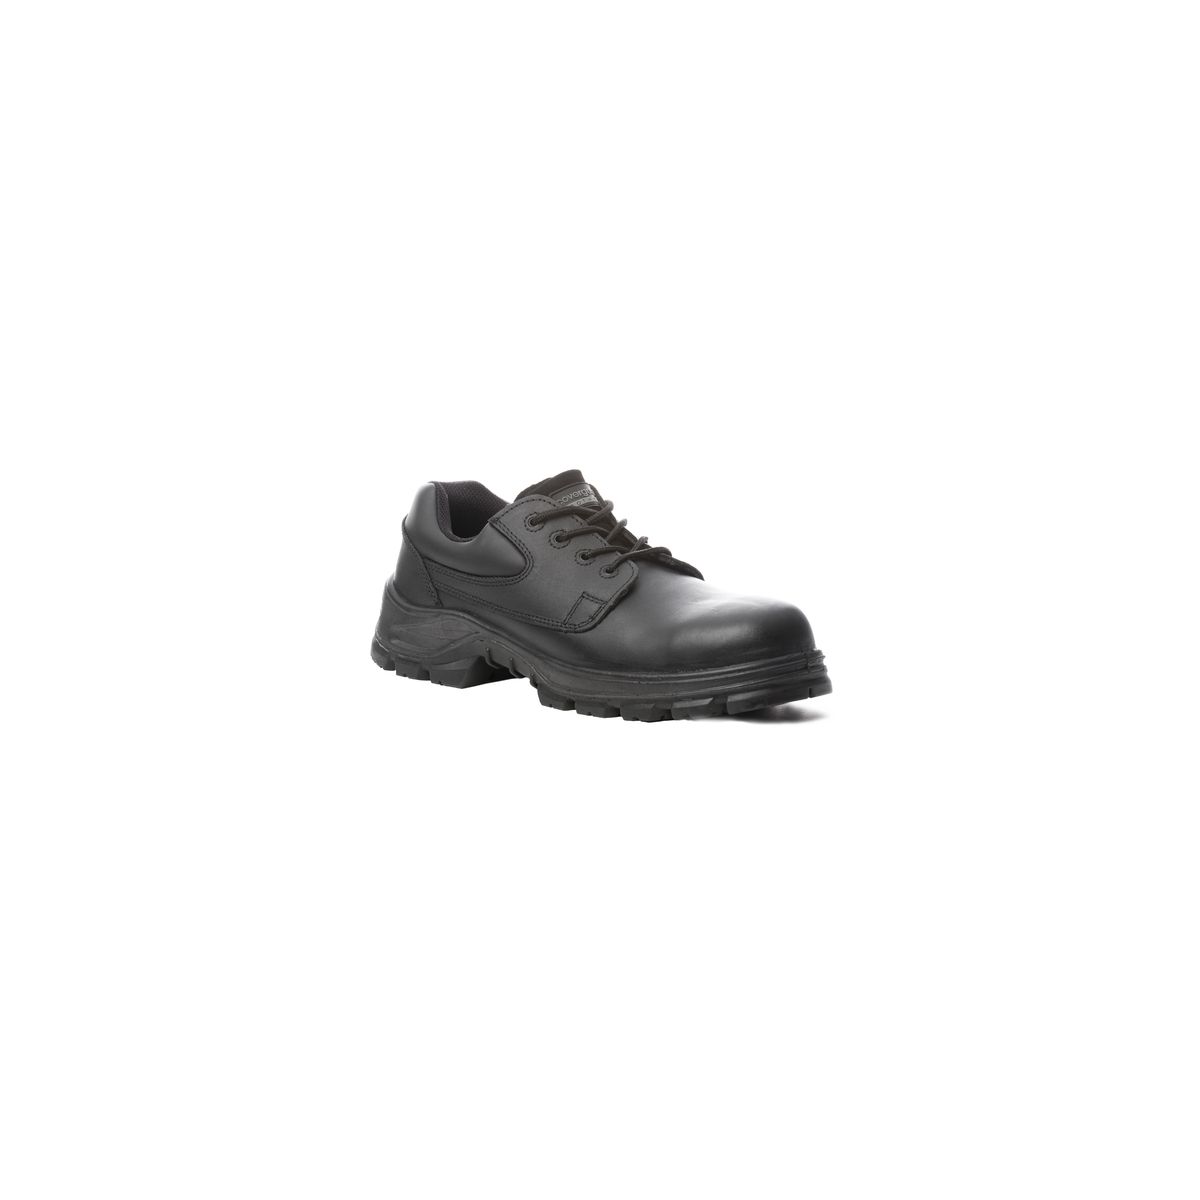 Chaussure de sécurité AVENTURINE S3 basse noir composite - COVERGUARD - Taille 41 0